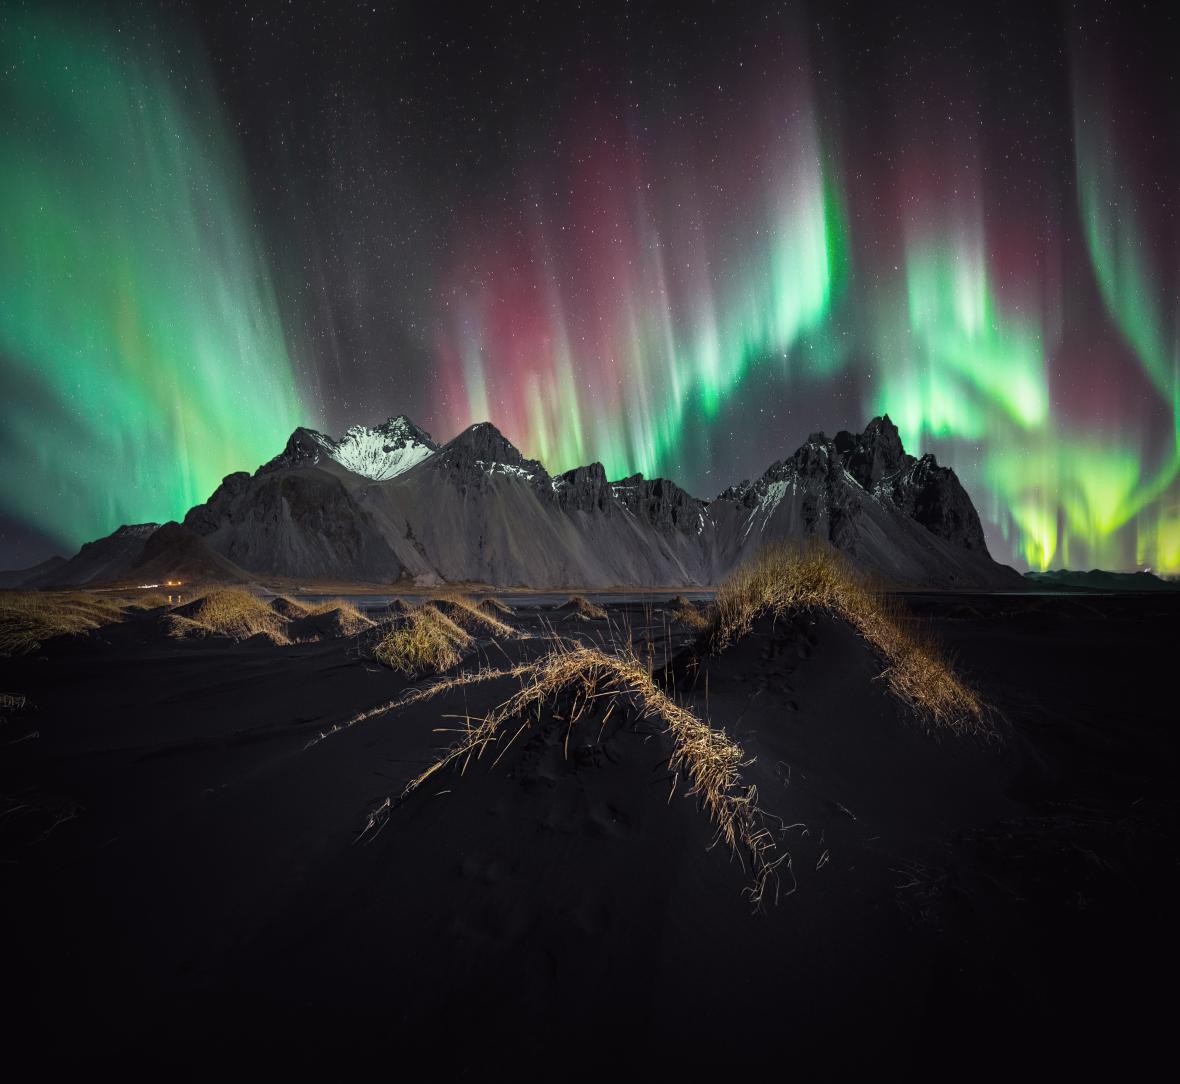 Χρησιμοποιώντας μια φωτογραφική μηχανή Sony ILCE-7SM3, ο Στέφαν Λίμπερμαν απαθανάτισε το Βόρειο Σέλας πάνω από το ισλανδικό βουνό Βέστραχορν σε αυτή την πανοραμική εικόνα φτιαγμένη από τρεις φωτογραφίες, τις οποίες επεξεργάστηκε ύστερα με τα προγράμματα Adobe Lightroom και Photoshop